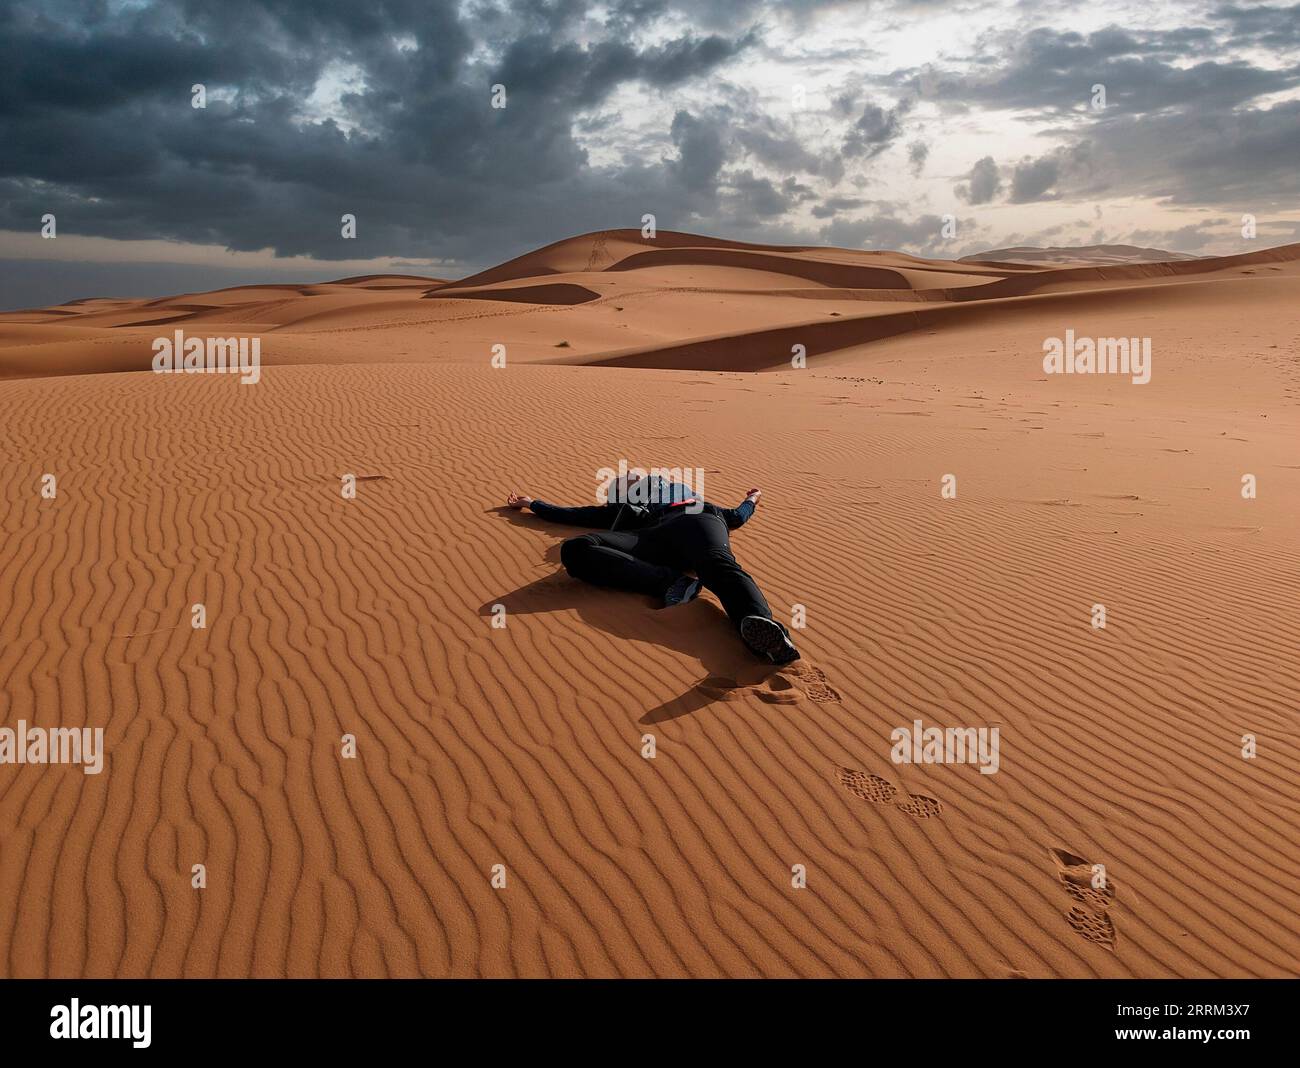 A person pretending to lay dead in the Erg Chebbi desert in Morocco Stock Photo